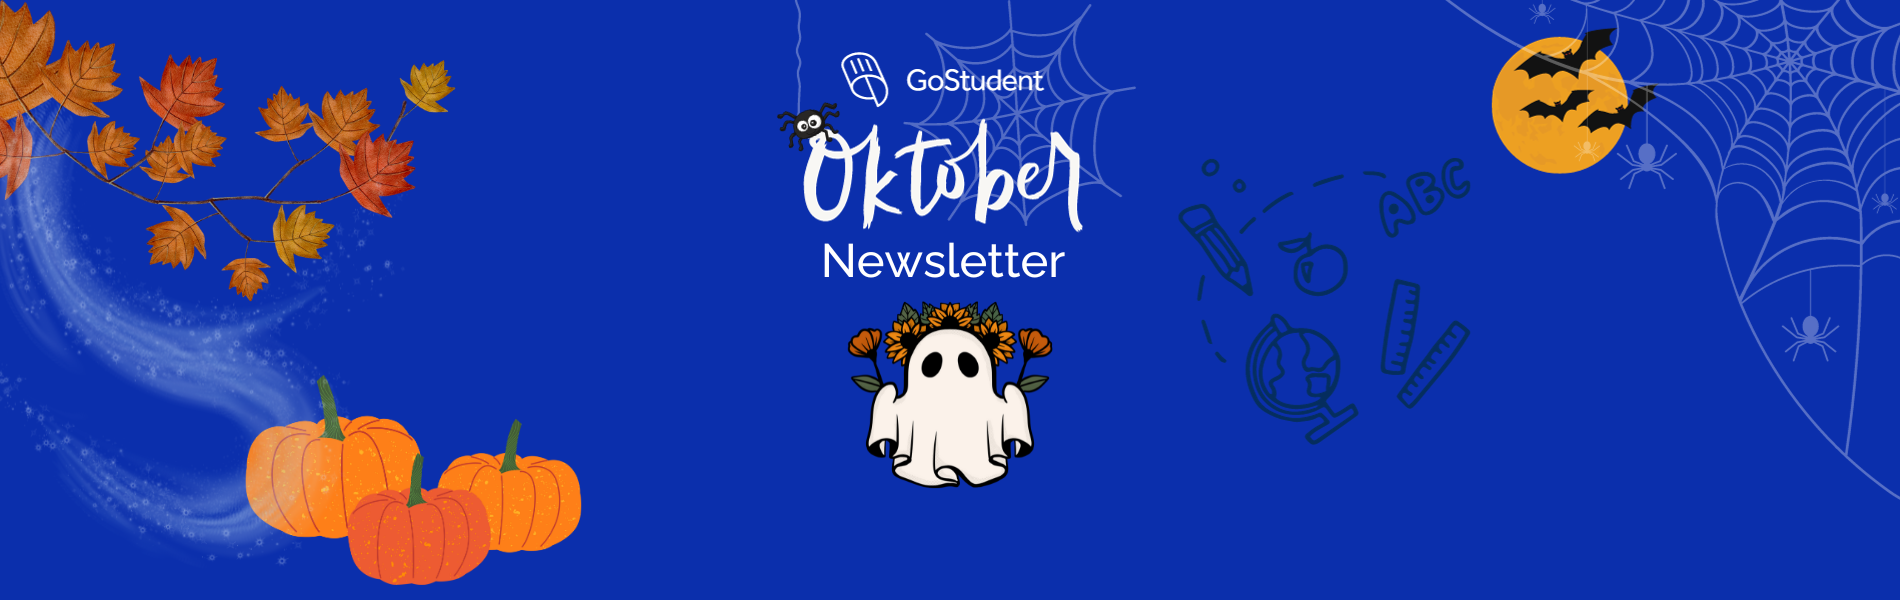 Oktober Newsletter